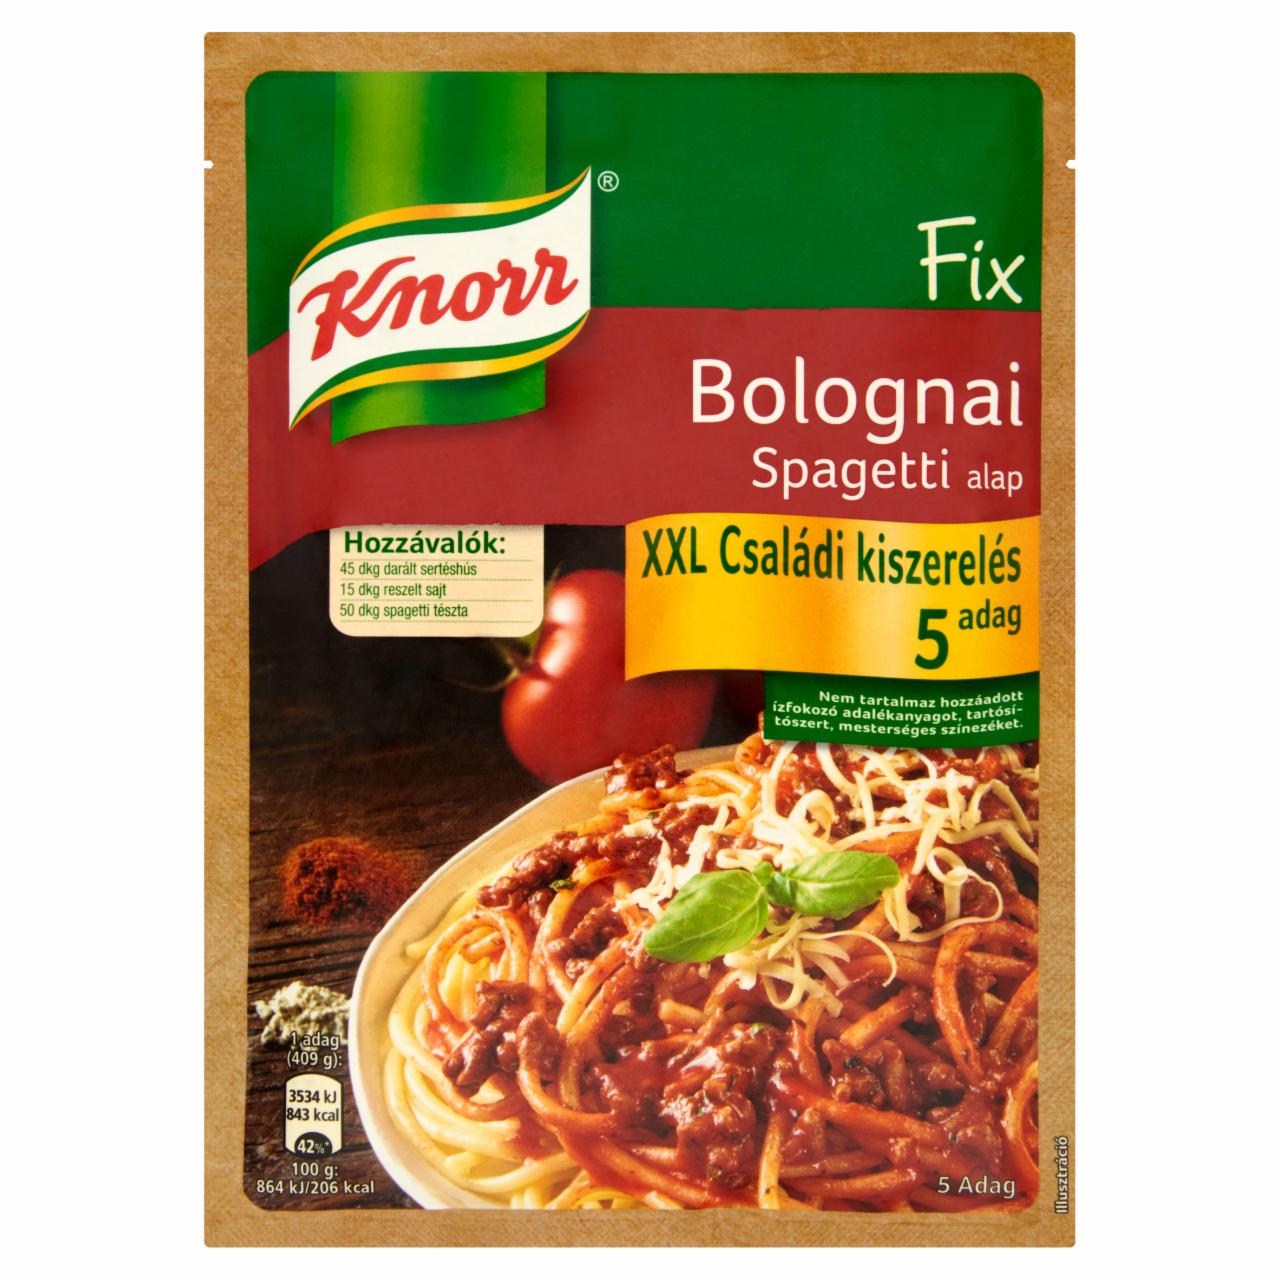 Képek - Knorr bolognai spagetti alap 89 g